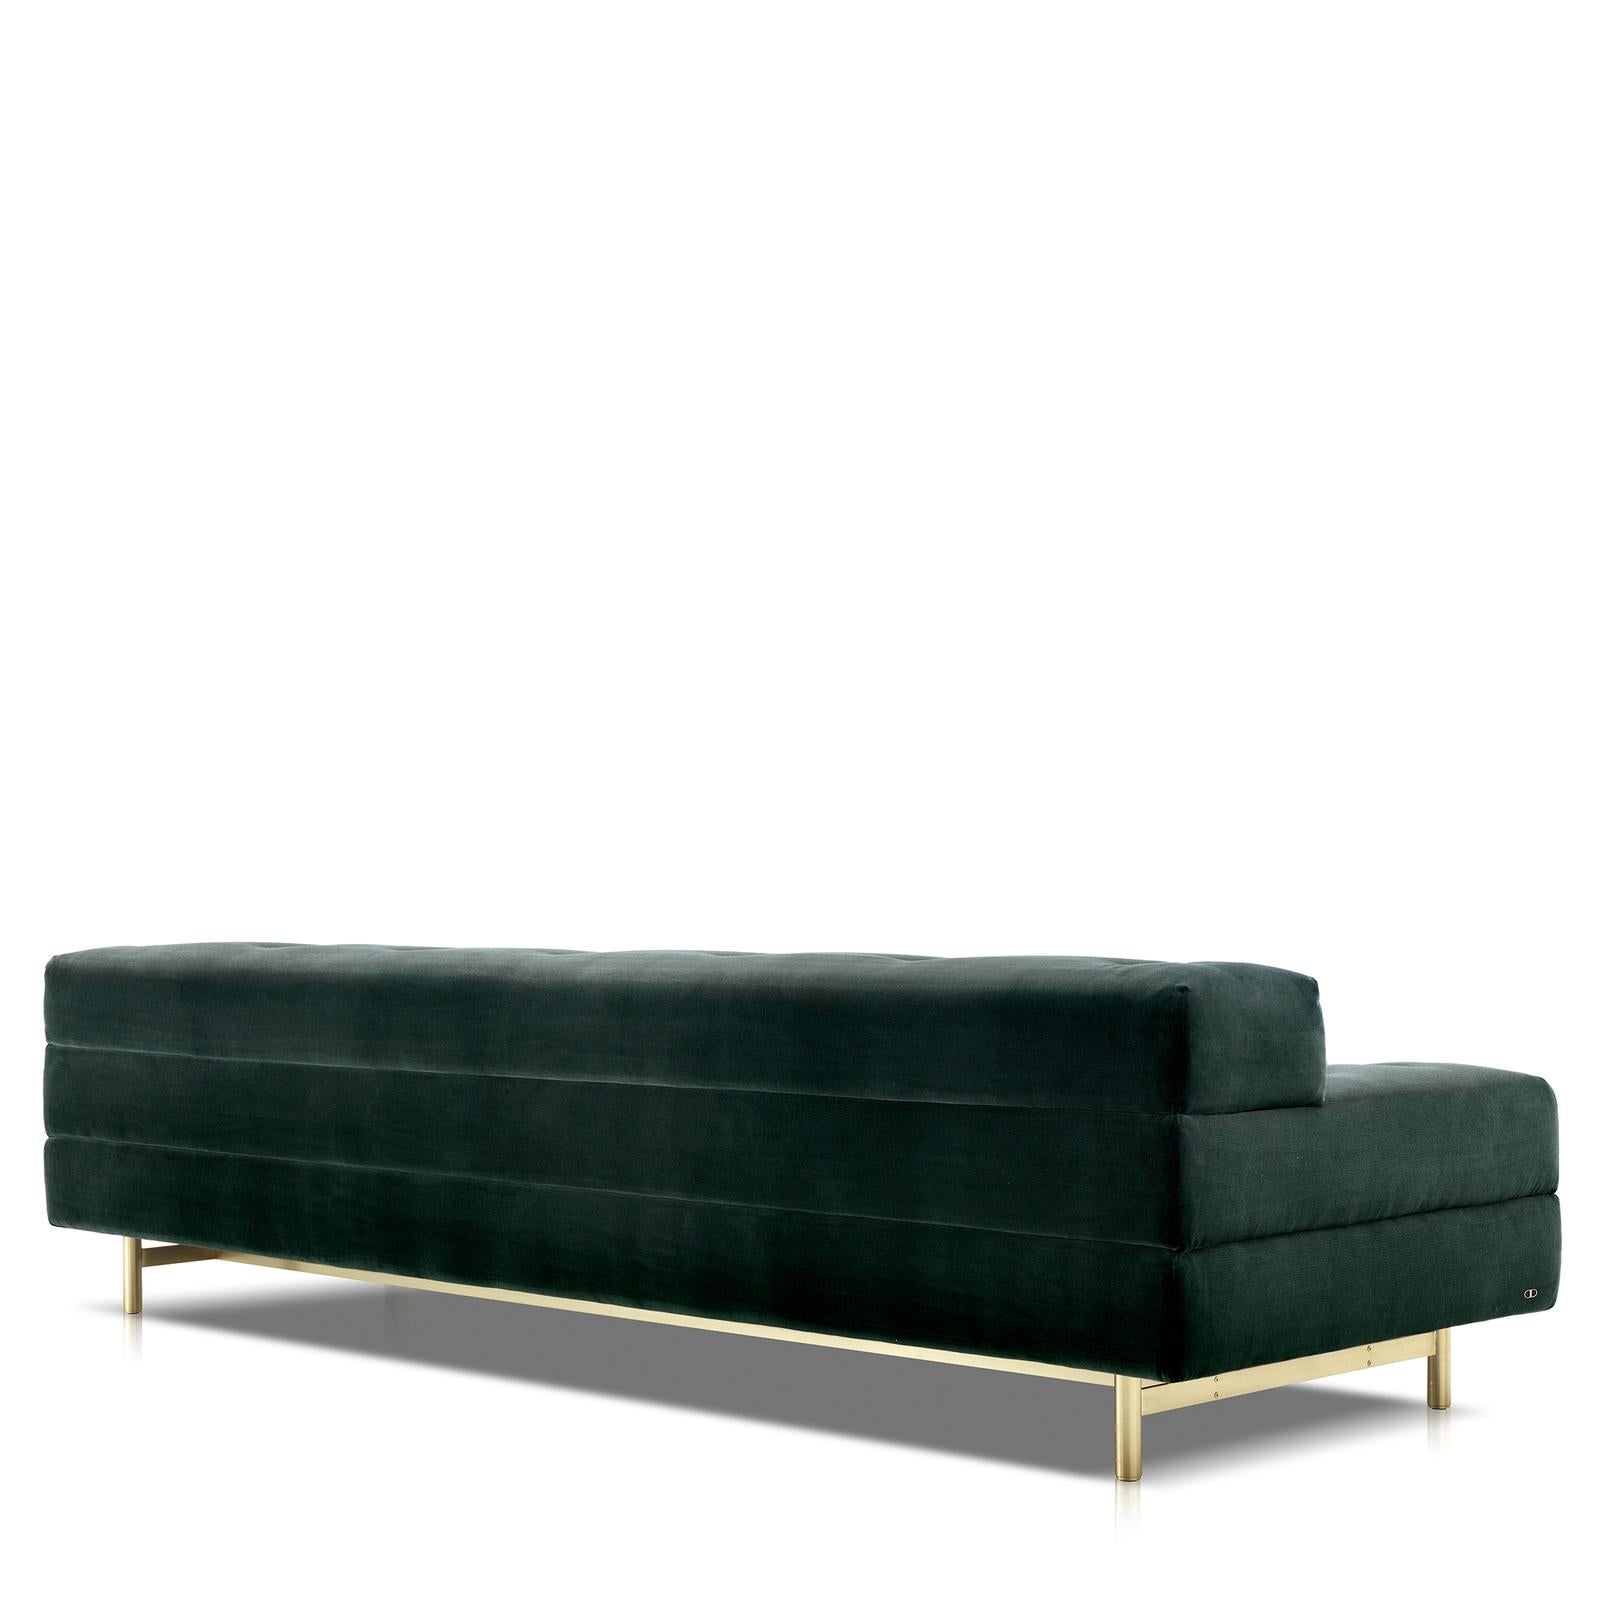 Élégant et sophistiqué, ce canapé est une pièce polyvalente qui s'adaptera superbement aux décors classiques et modernes. Recouverte d'un tissu velours vert raffiné, sa longue silhouette repose sur quatre pieds fins en laiton satiné et sur une